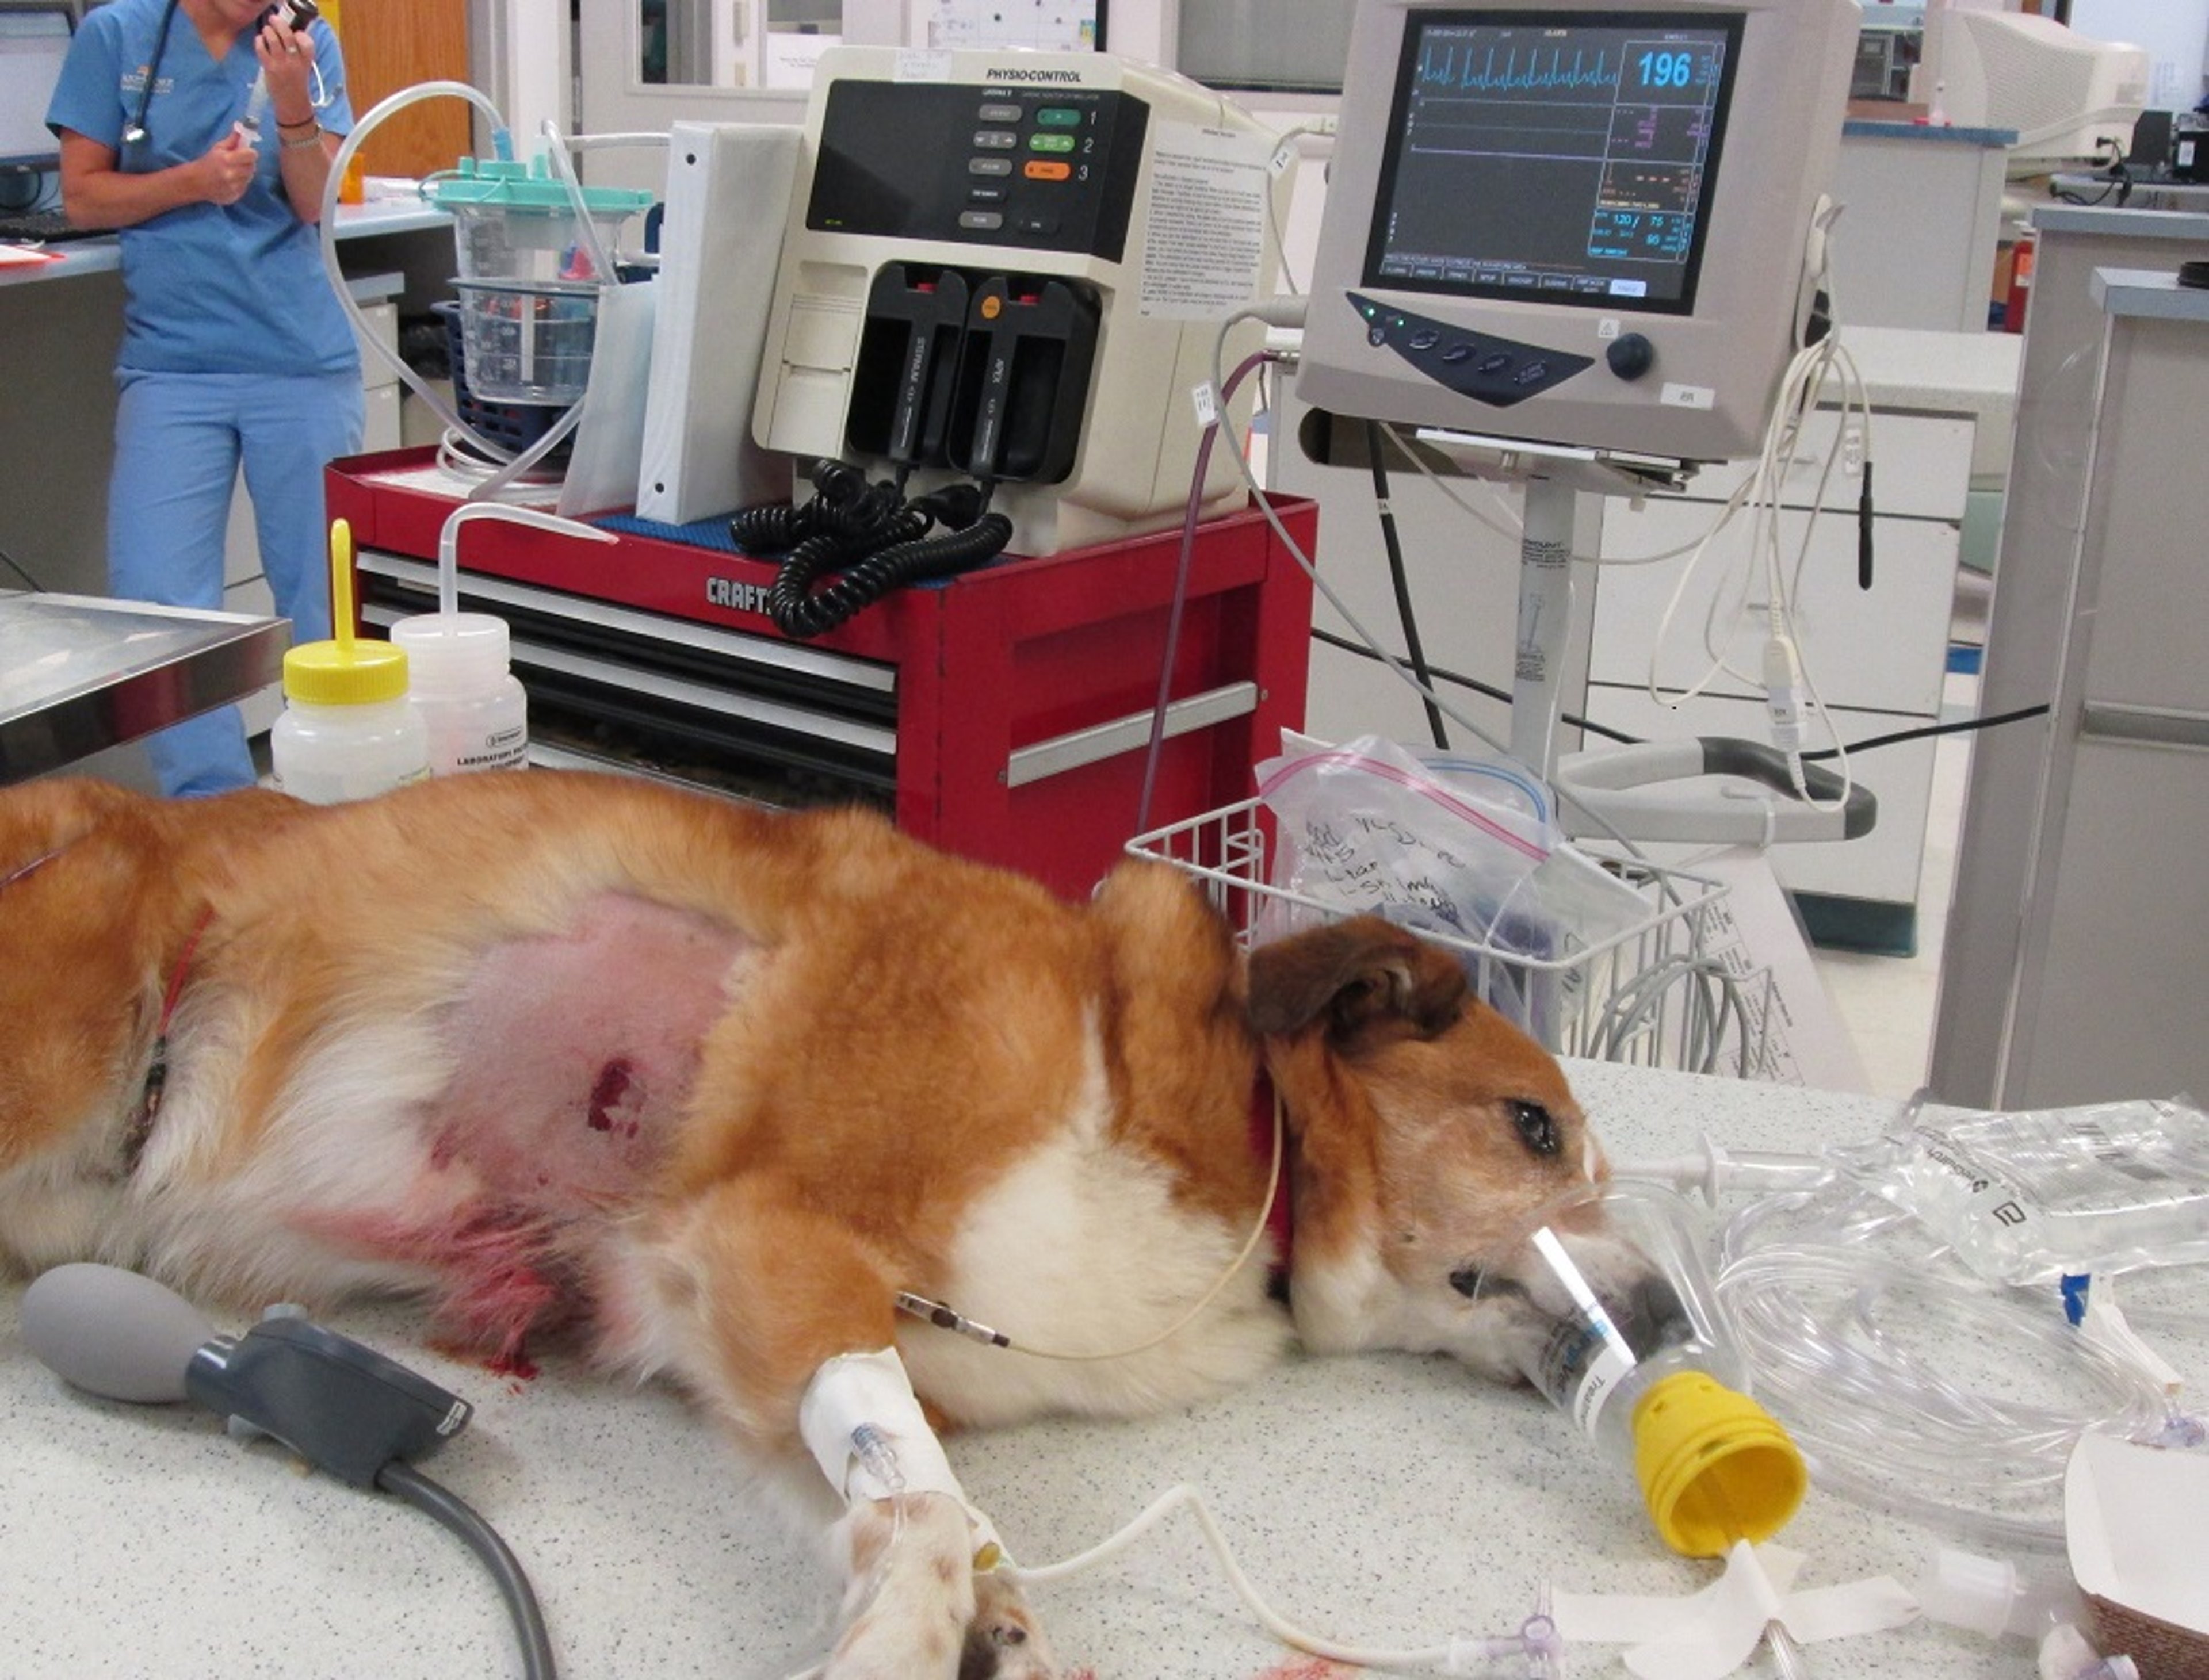 Emergency trauma patient, dog